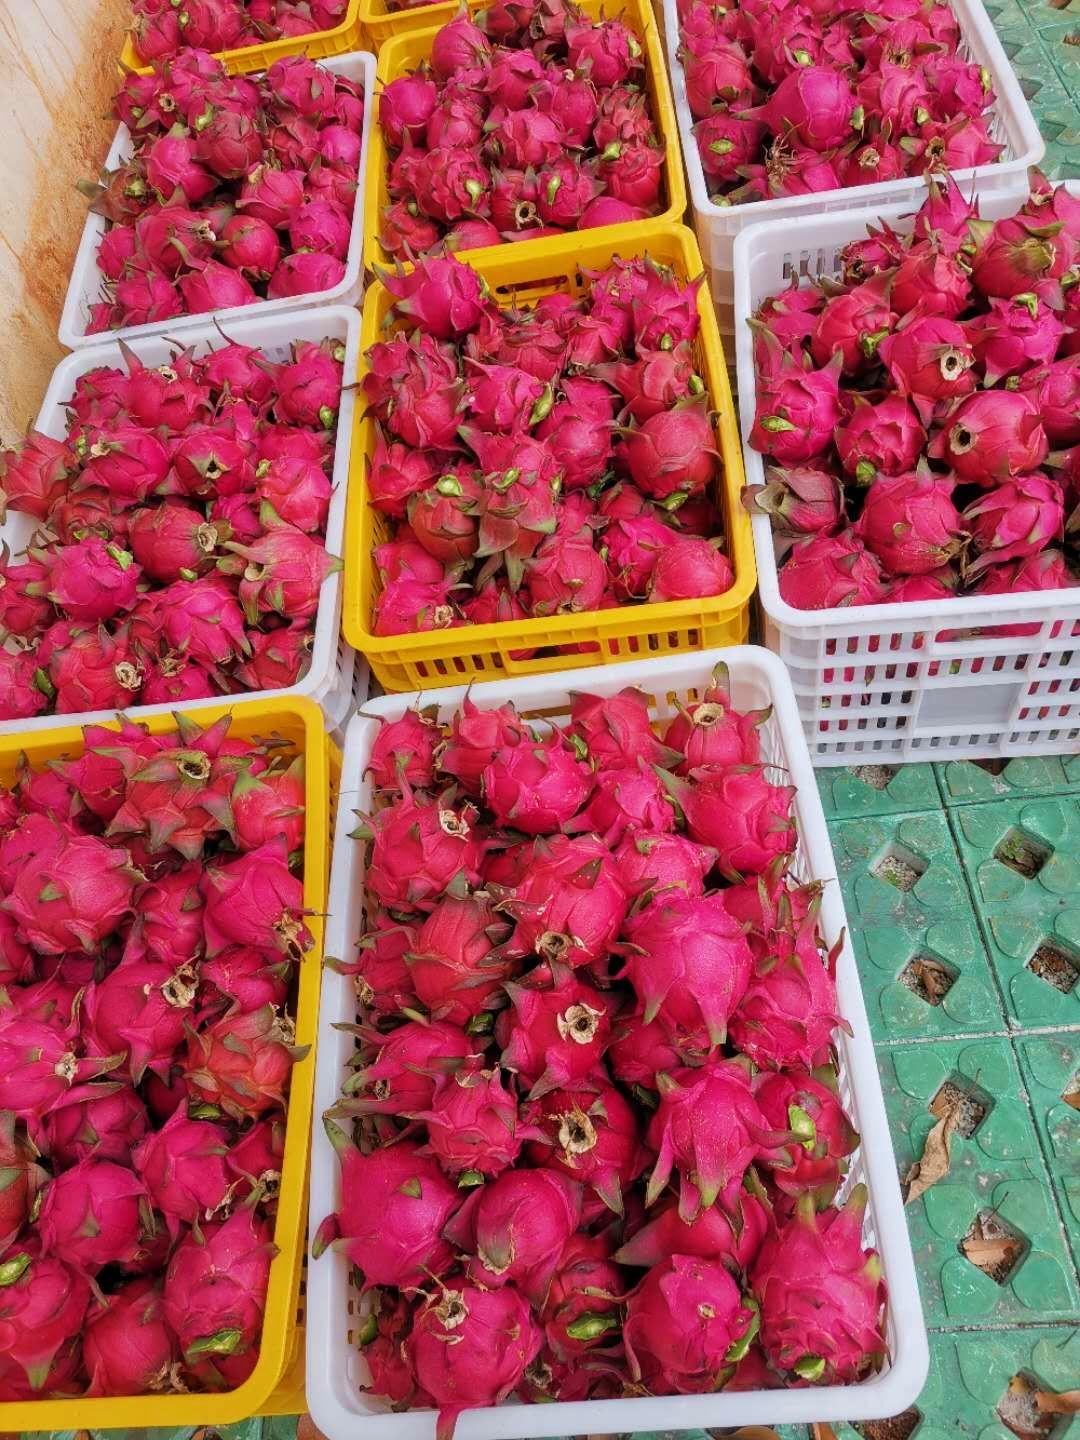 广东自家种植红心火龙果 批发出售 皮薄厚 没加任何保鲜剂